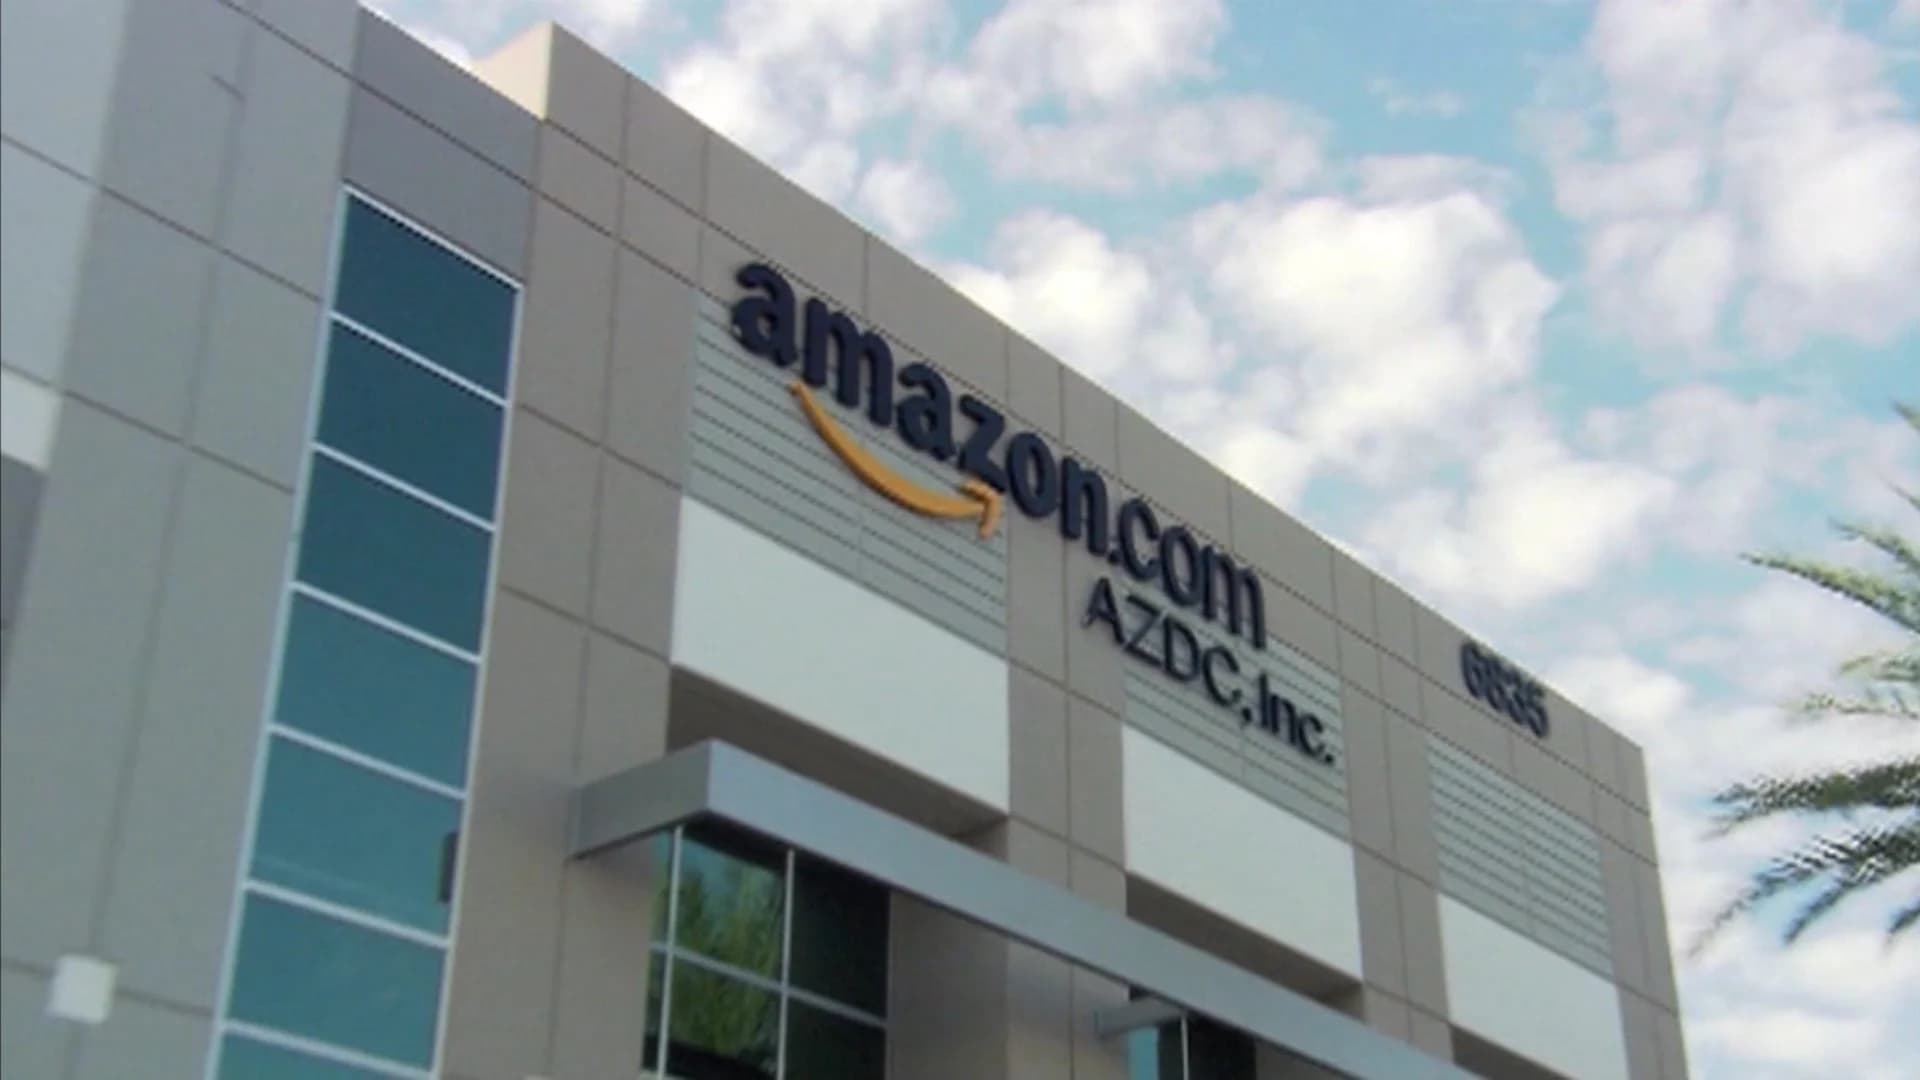 Amazon kicks off third annual Prime Day